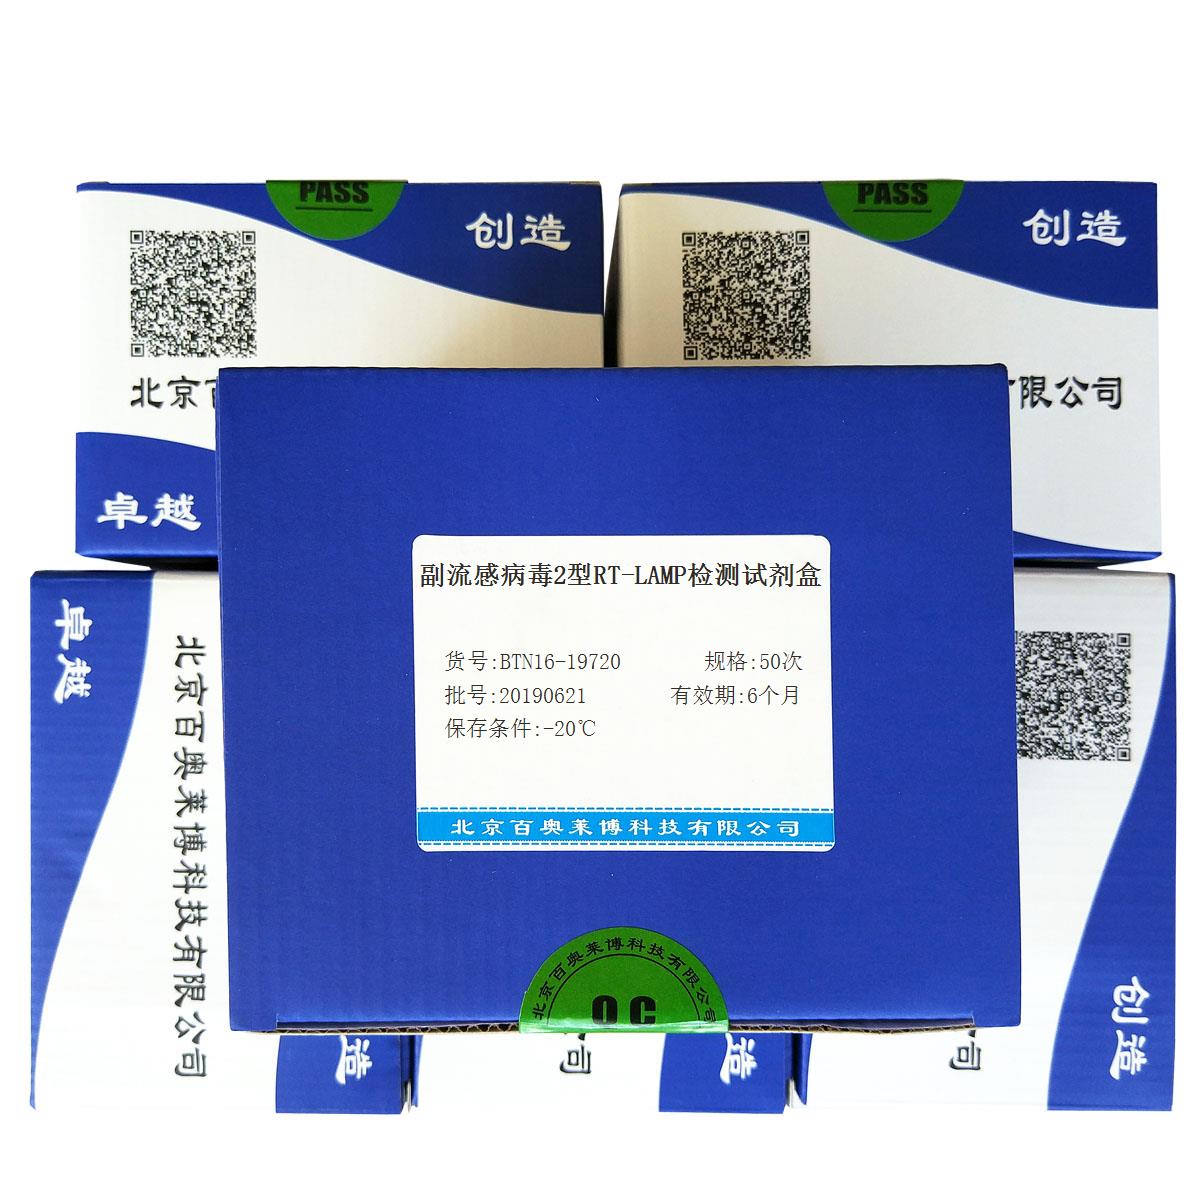 副流感病毒2型RT-LAMP检测试剂盒北京供应商